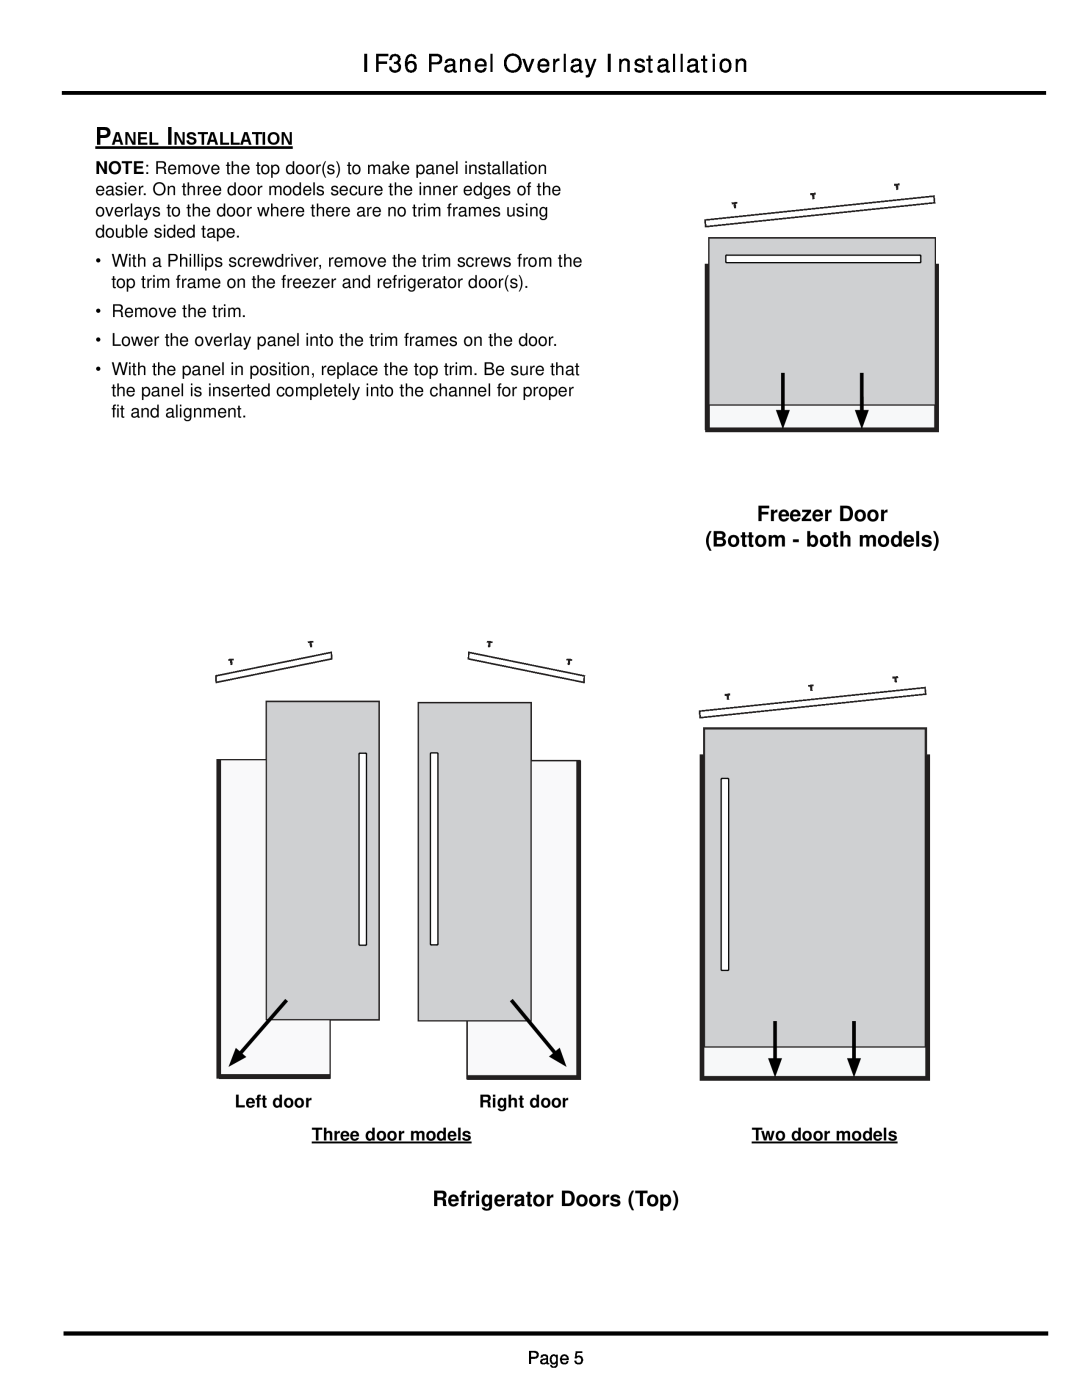 Dacor IF36INDFSF Freezer Door Bottom - both models, Refrigerator Doors Top, IF36 Panel Overlay Installation, Left door 